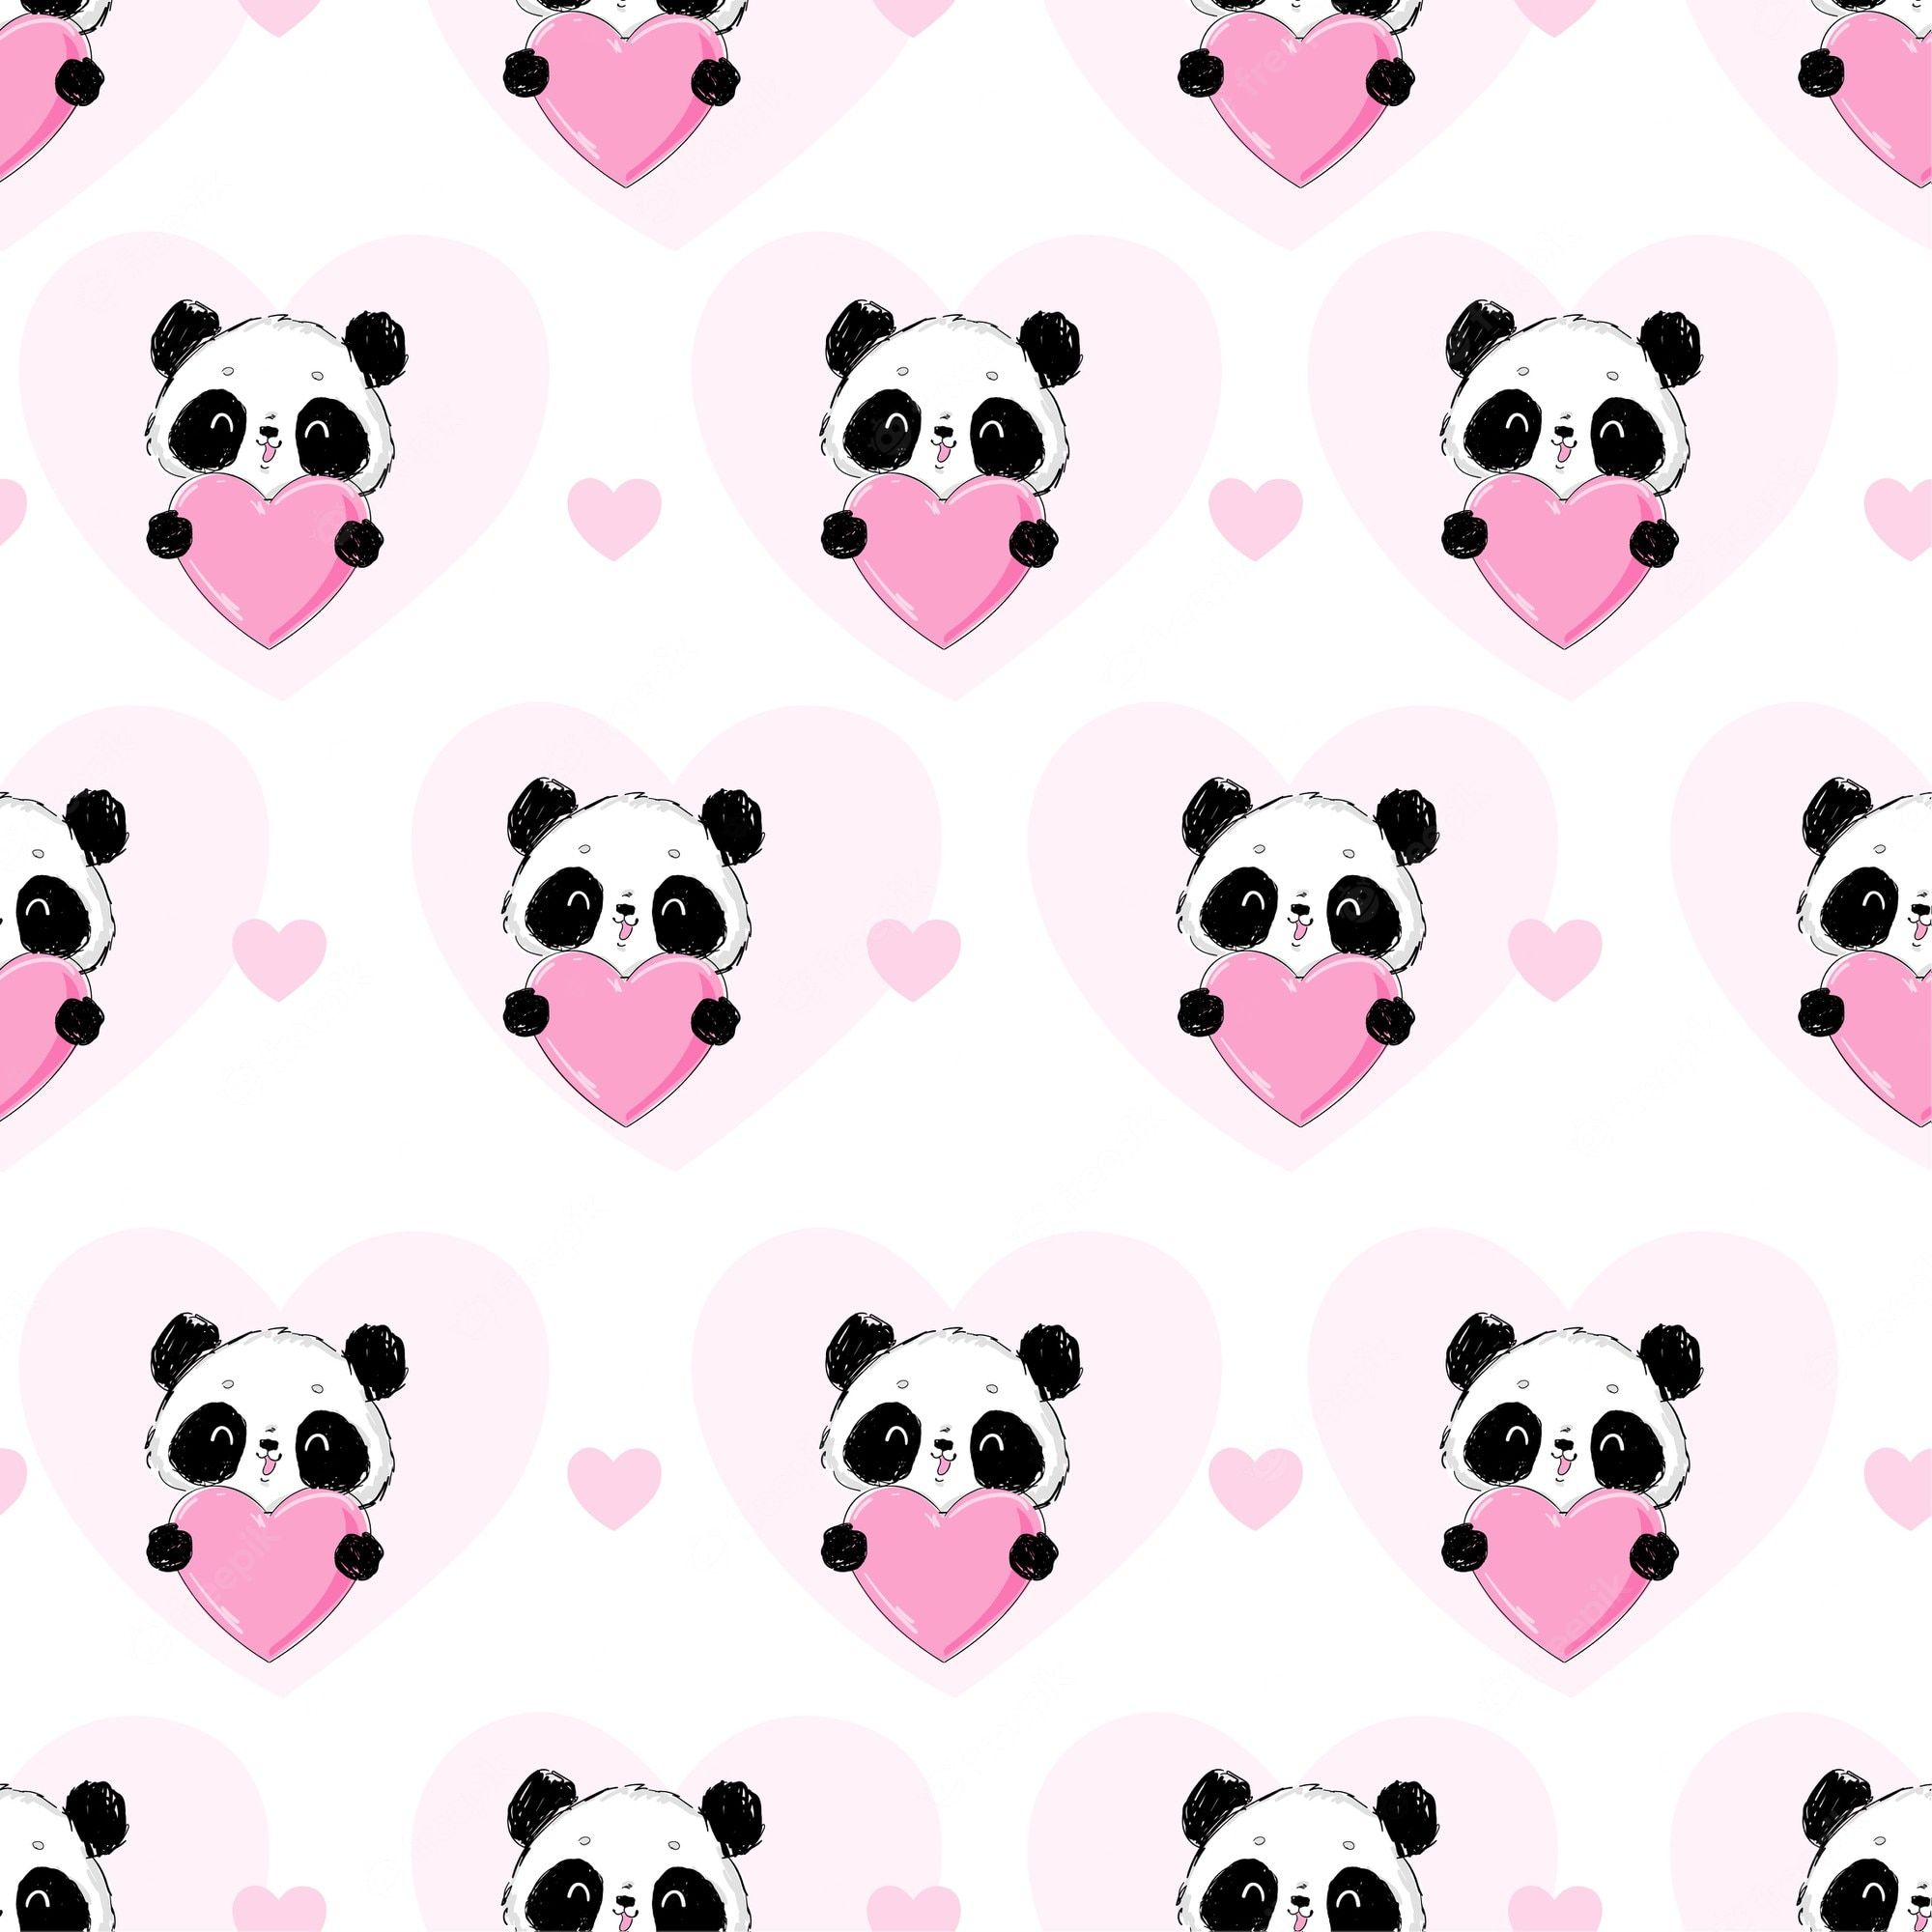 A pattern of pandas holding hearts - Panda